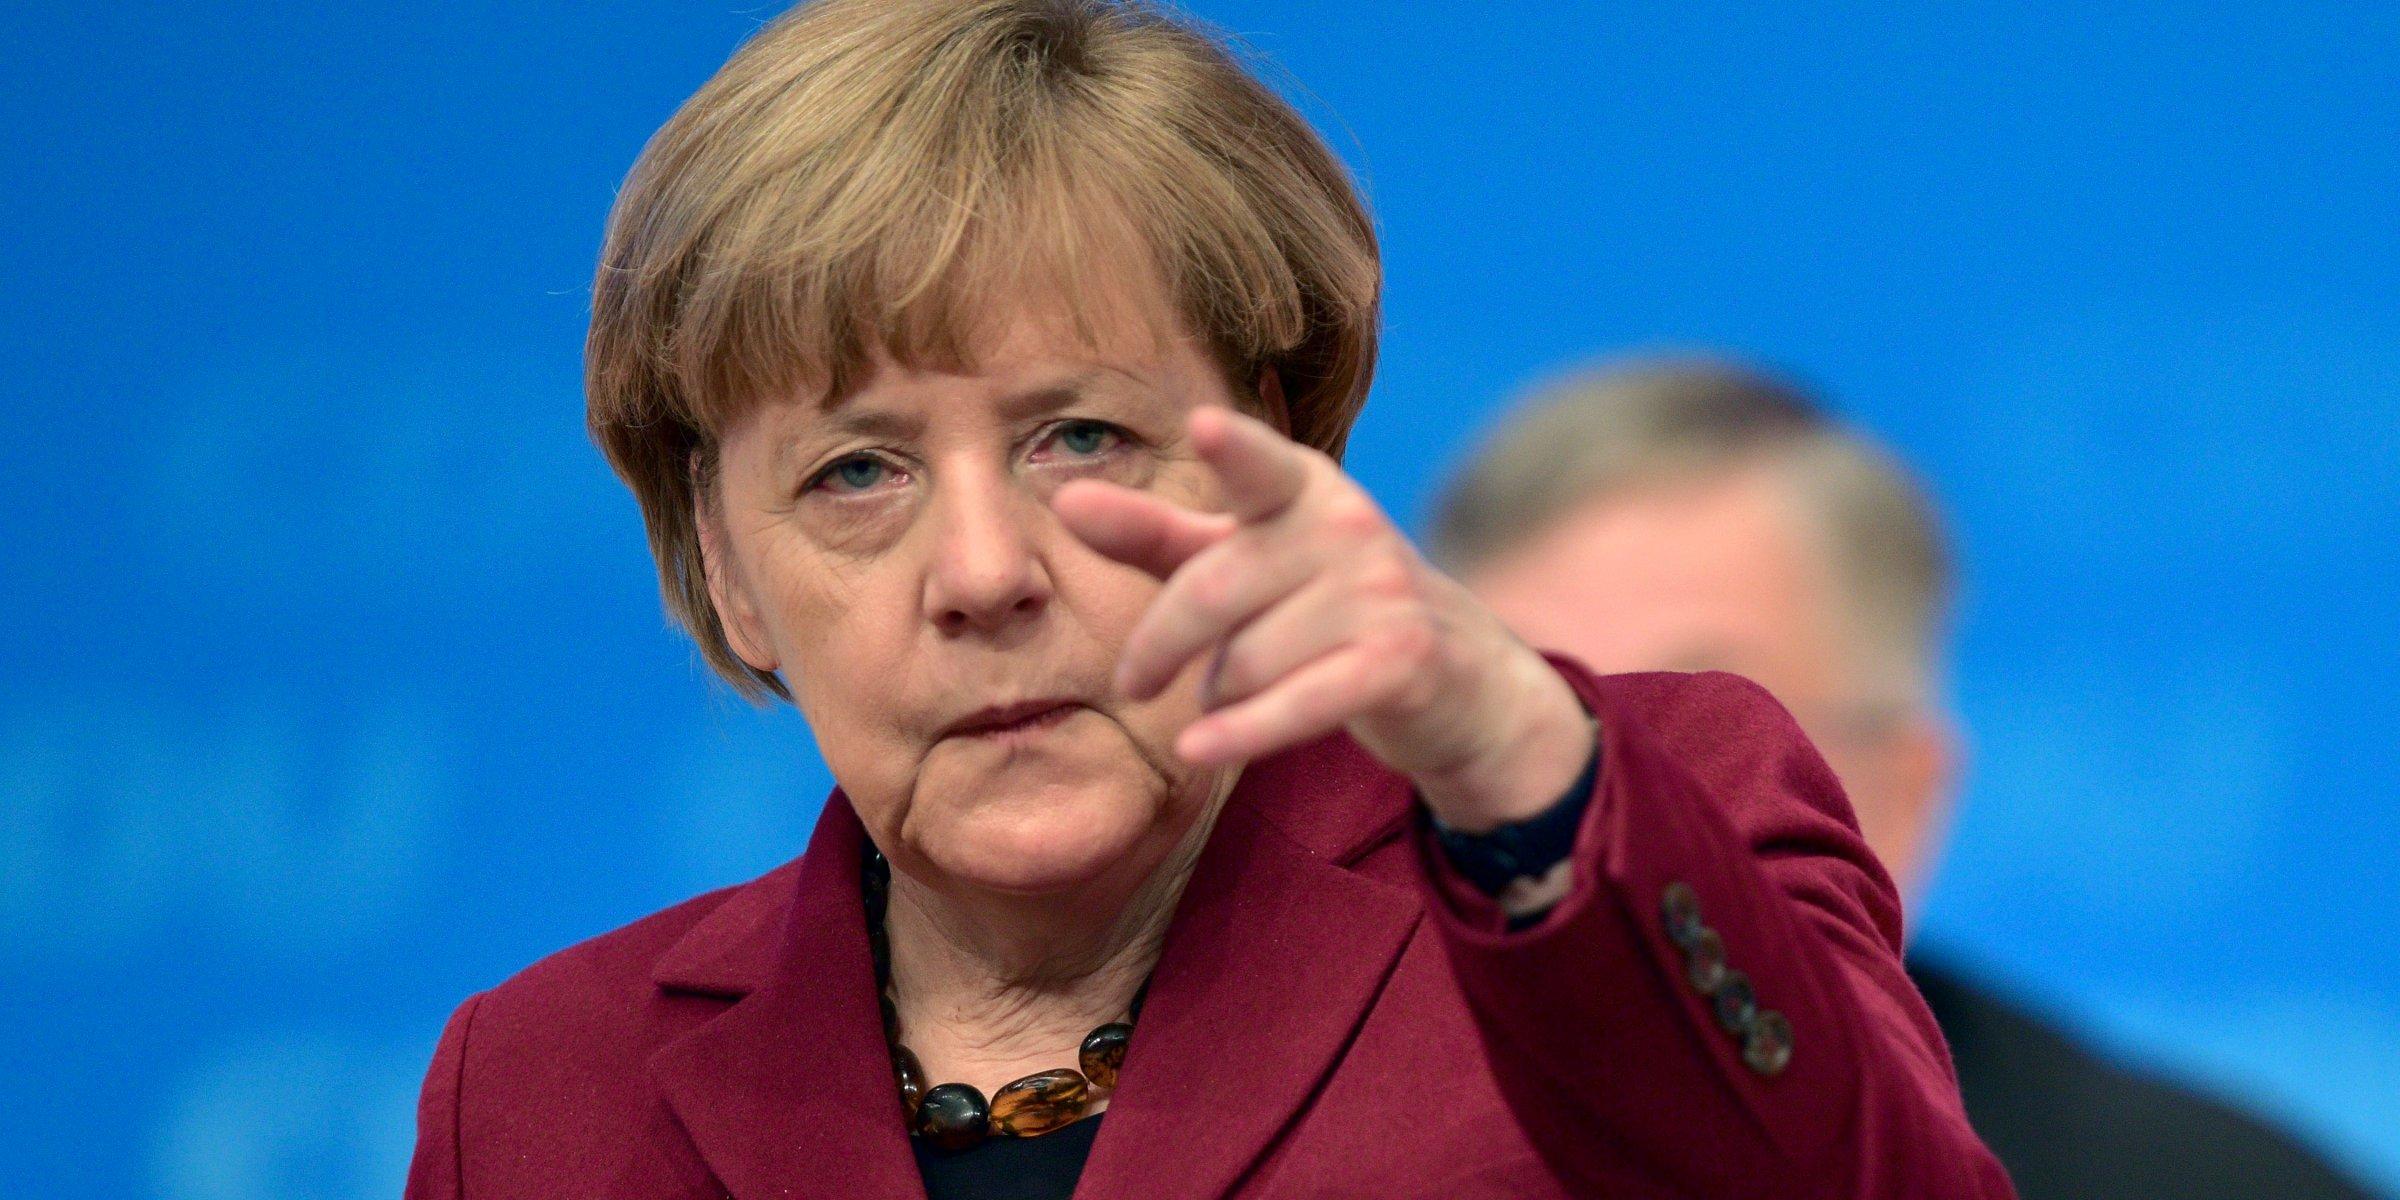 Njemačka: Počeli koalicioni pregovori, glavna tema budućnost Evrope